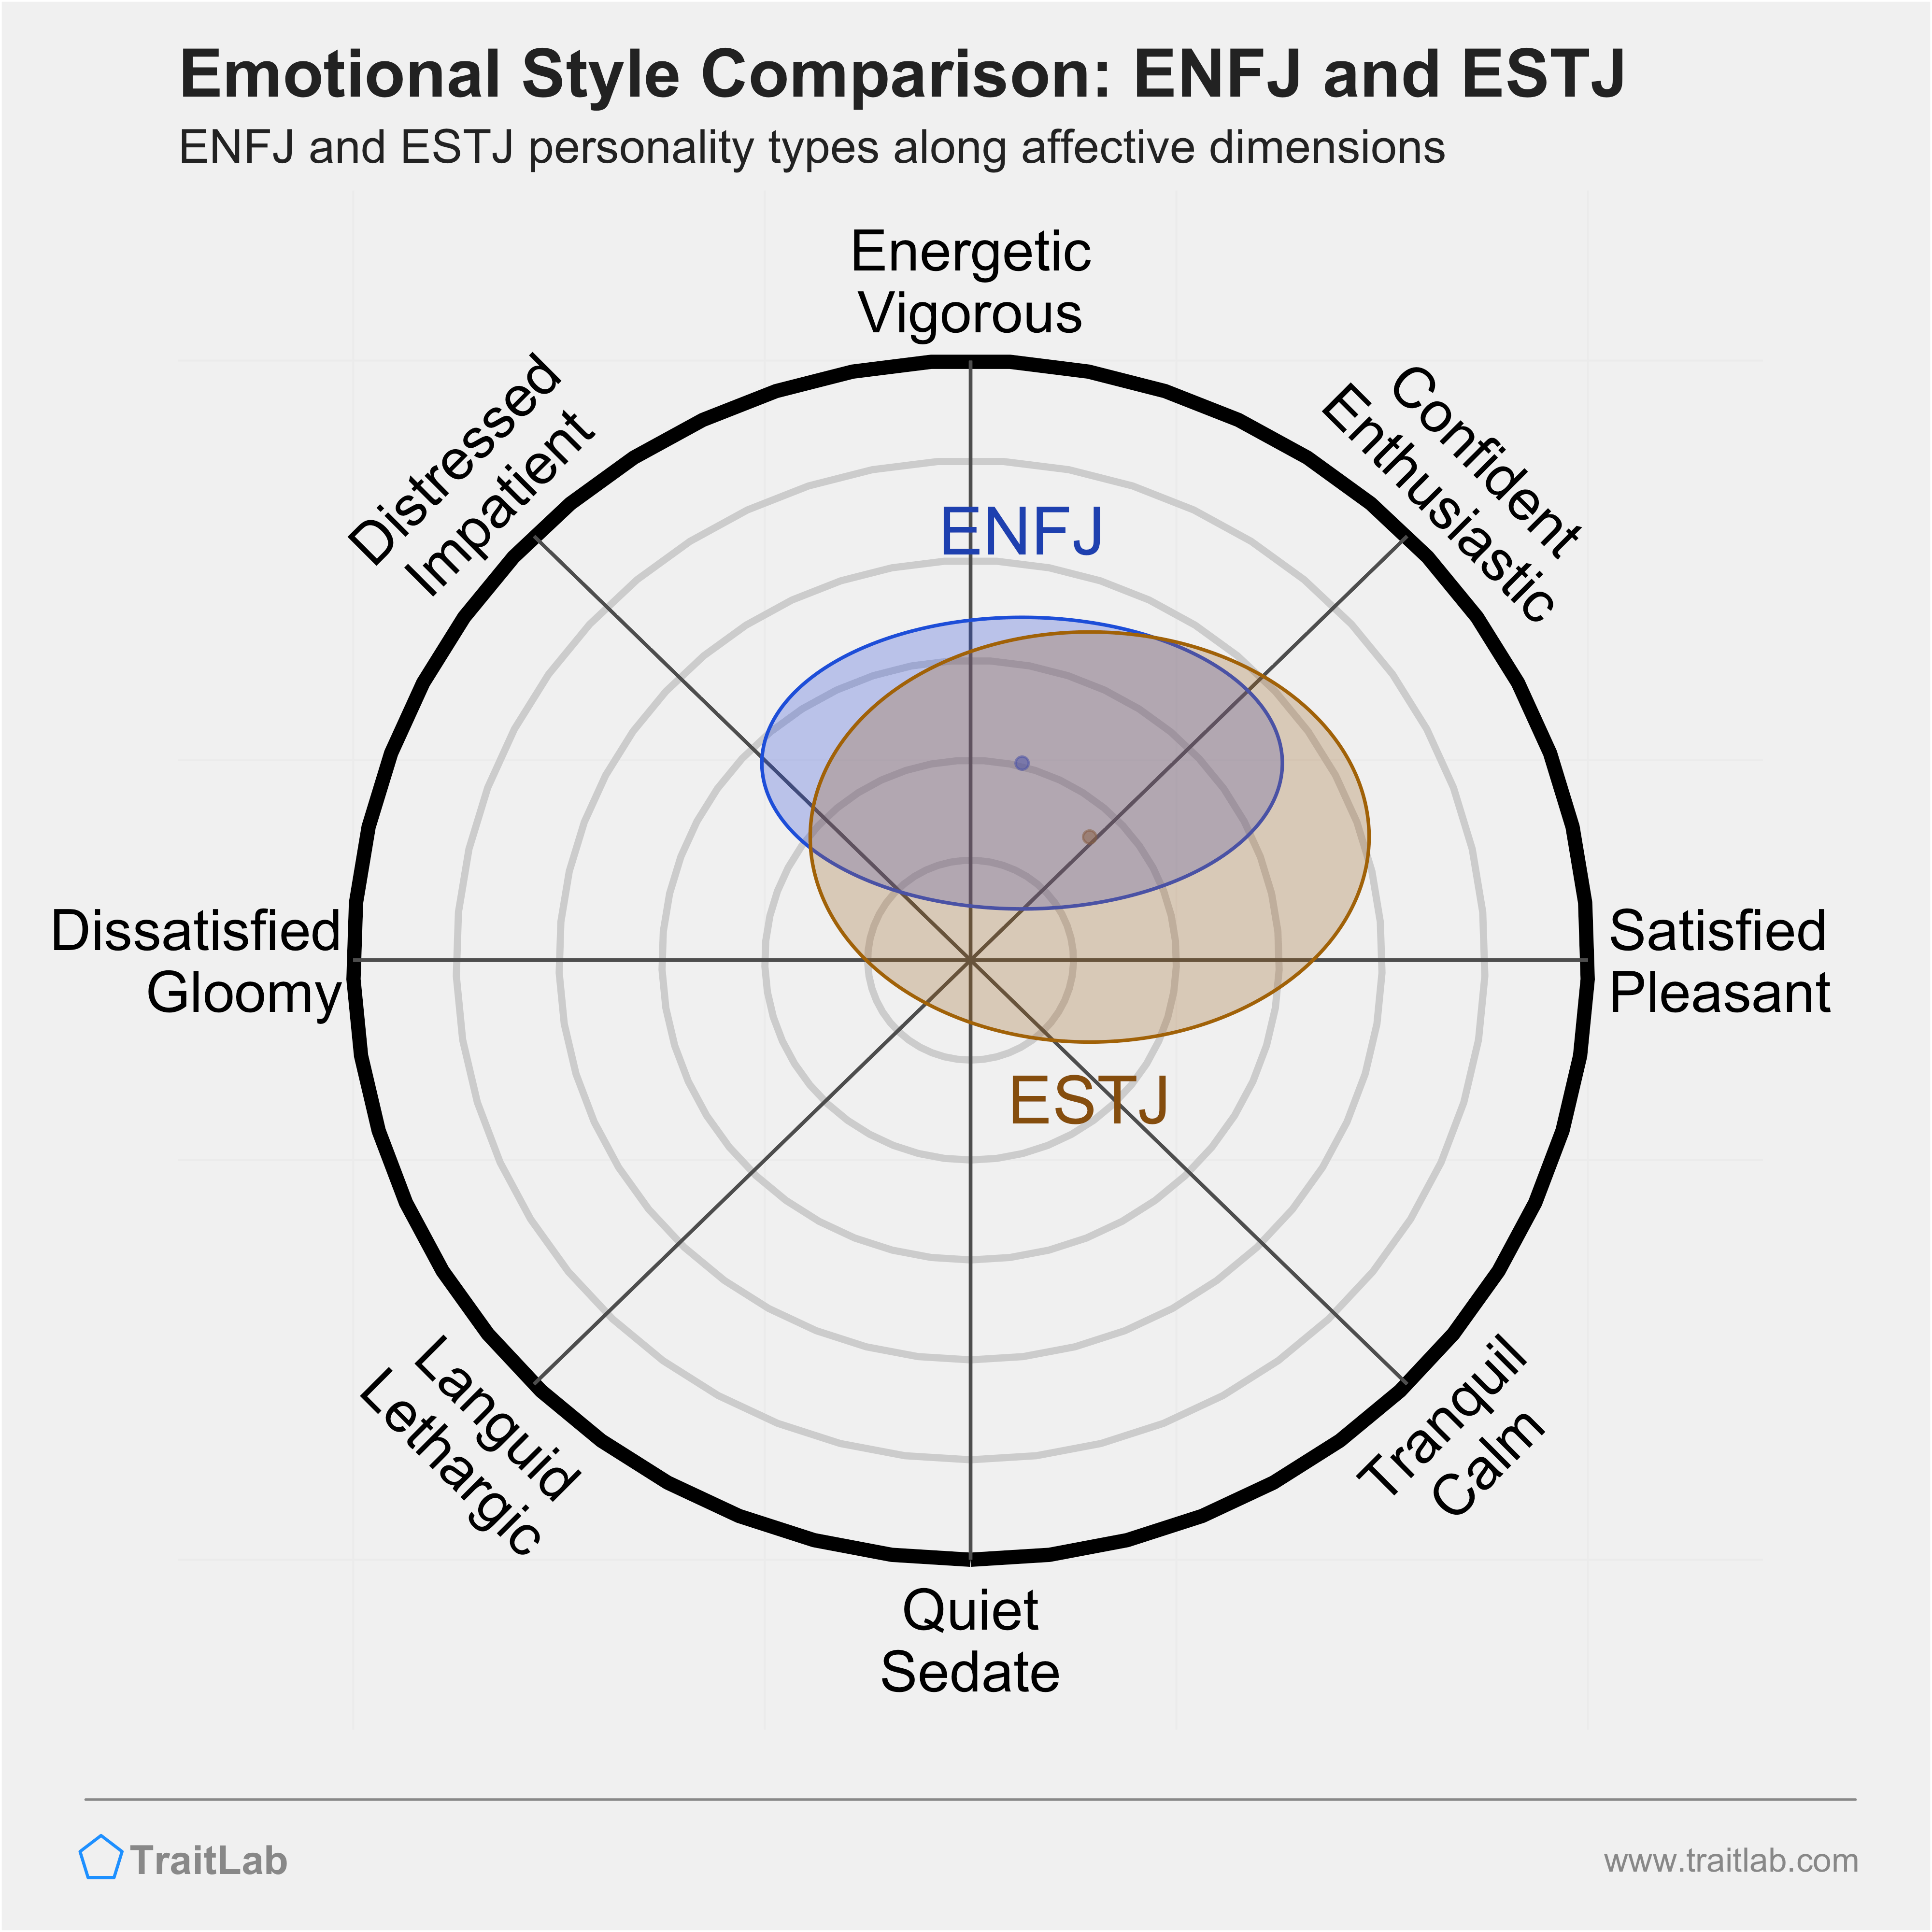 ENFJ and ESTJ comparison across emotional (affective) dimensions